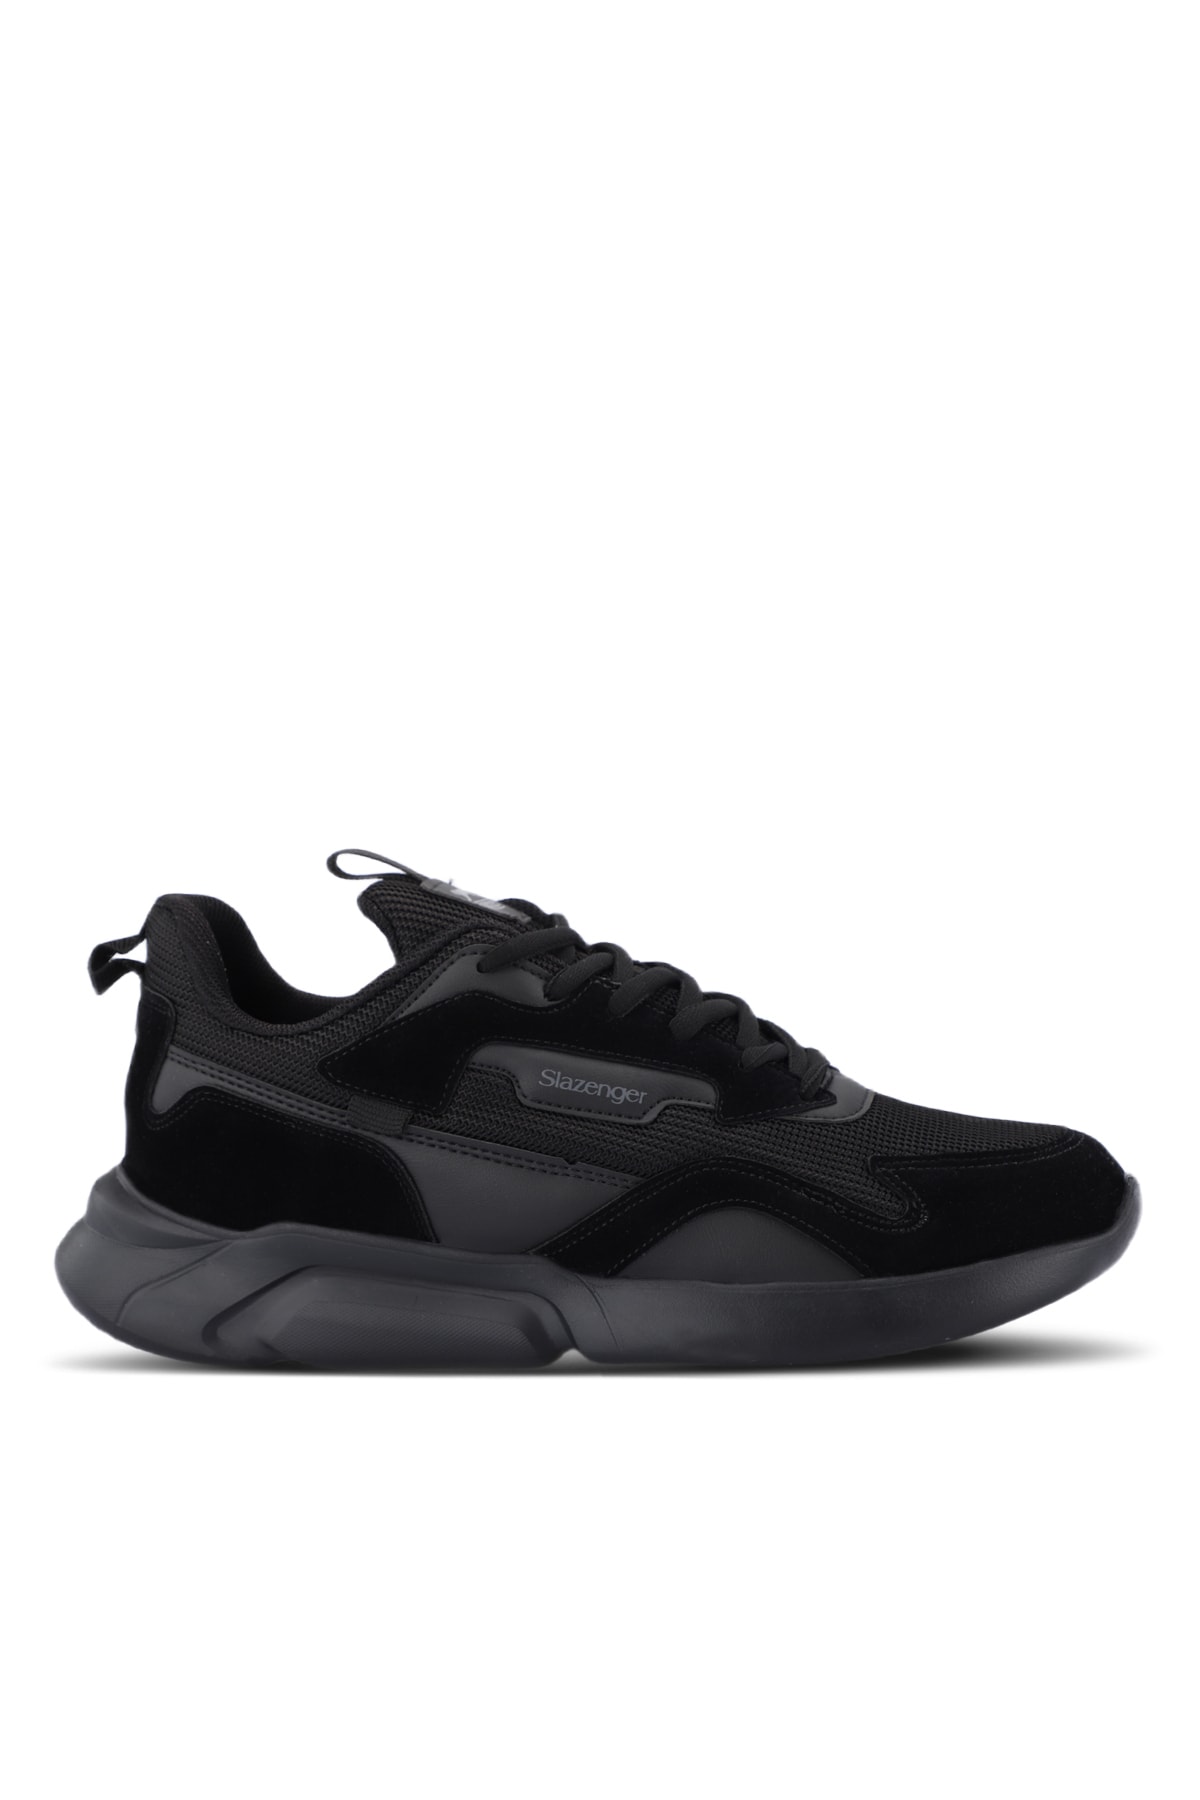 Slazenger OPTION Full Black Men's Sneaker Casual Sports Shoes